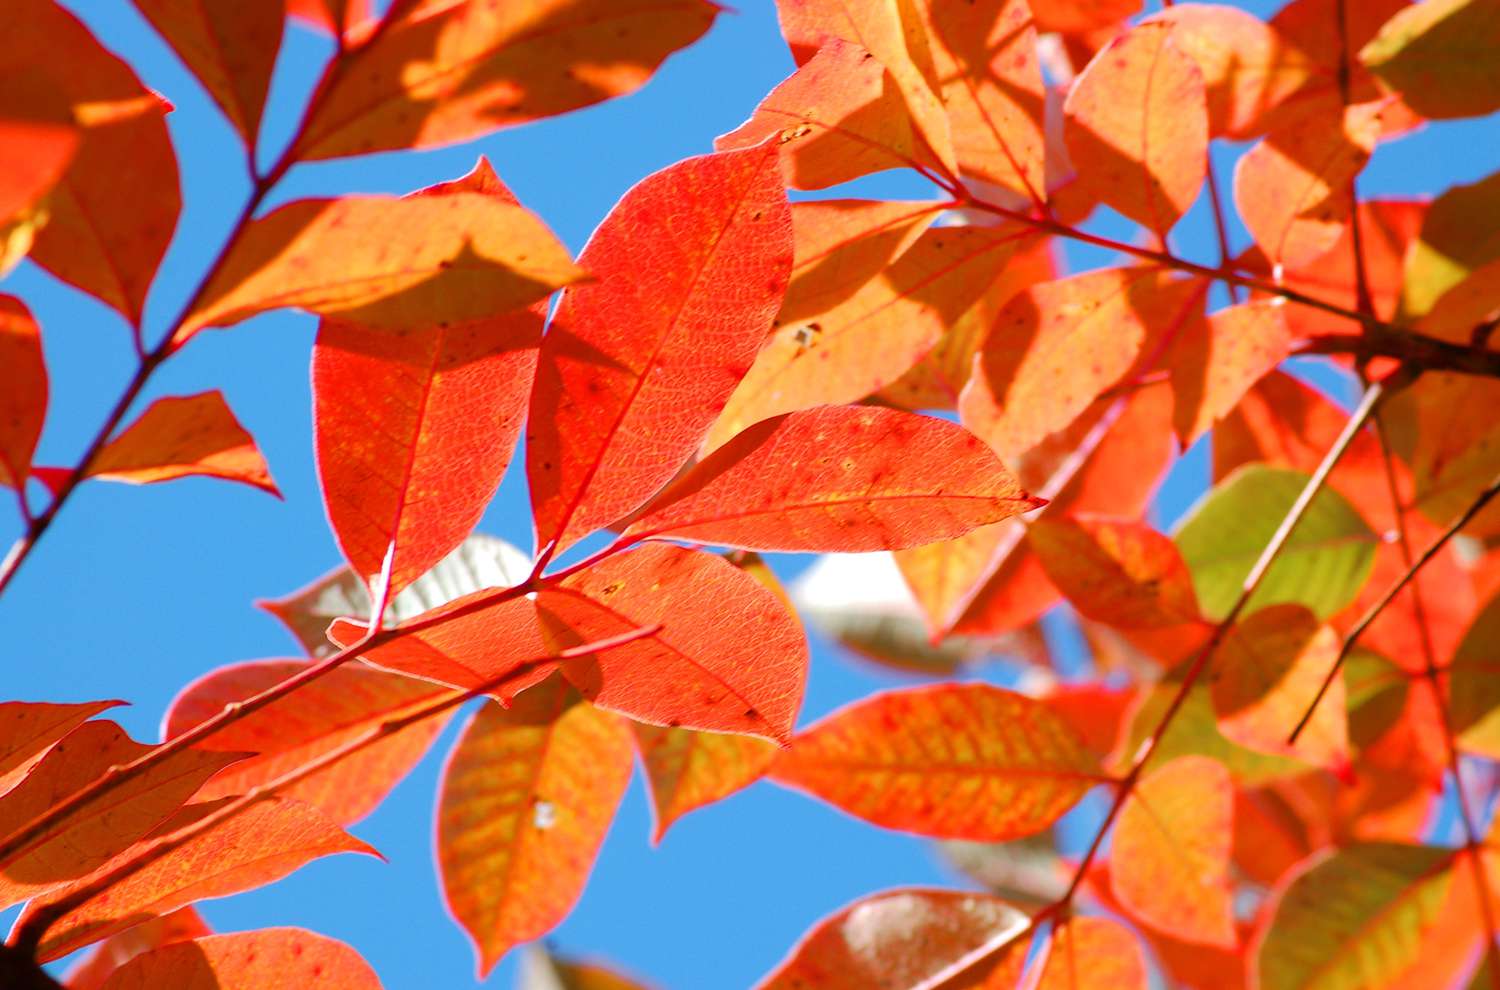 Herbstlaub von Giftsumach in Orange.